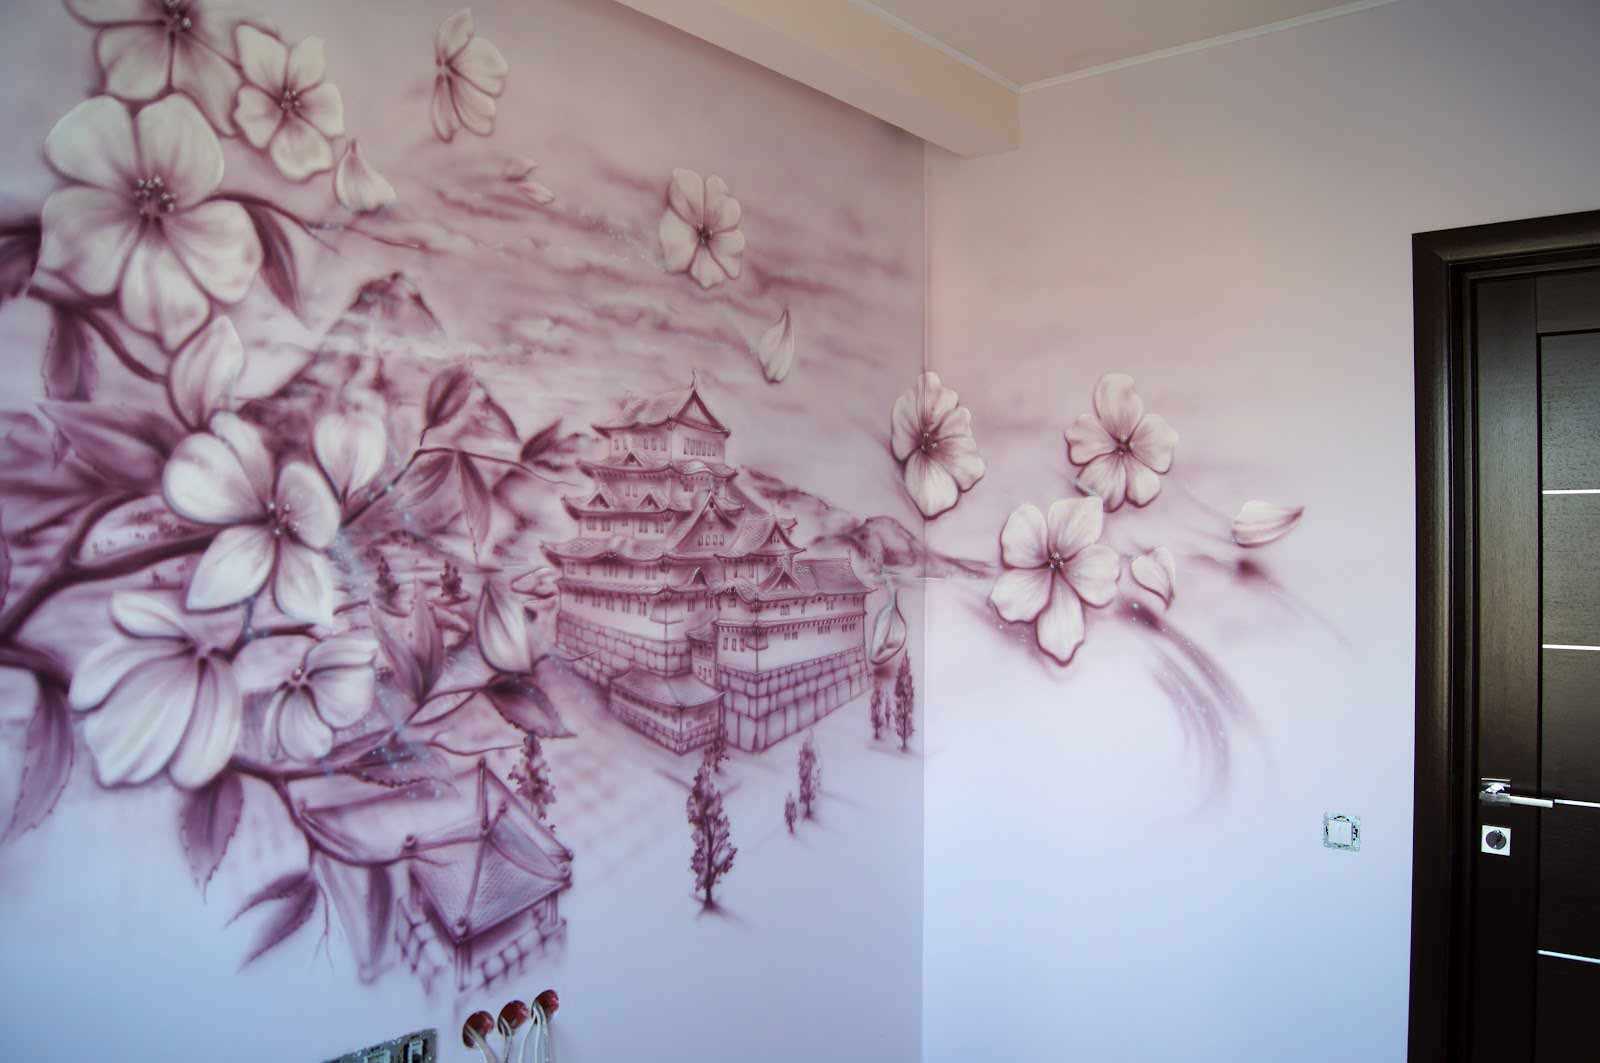 l'idea di una bella stanza interna con un motivo decorativo sul muro